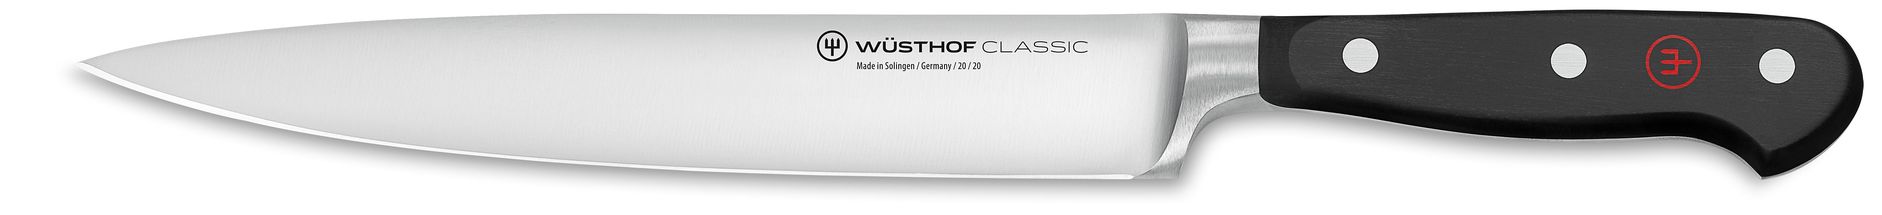 Wusthof Fleischmesser Classic 20 cm